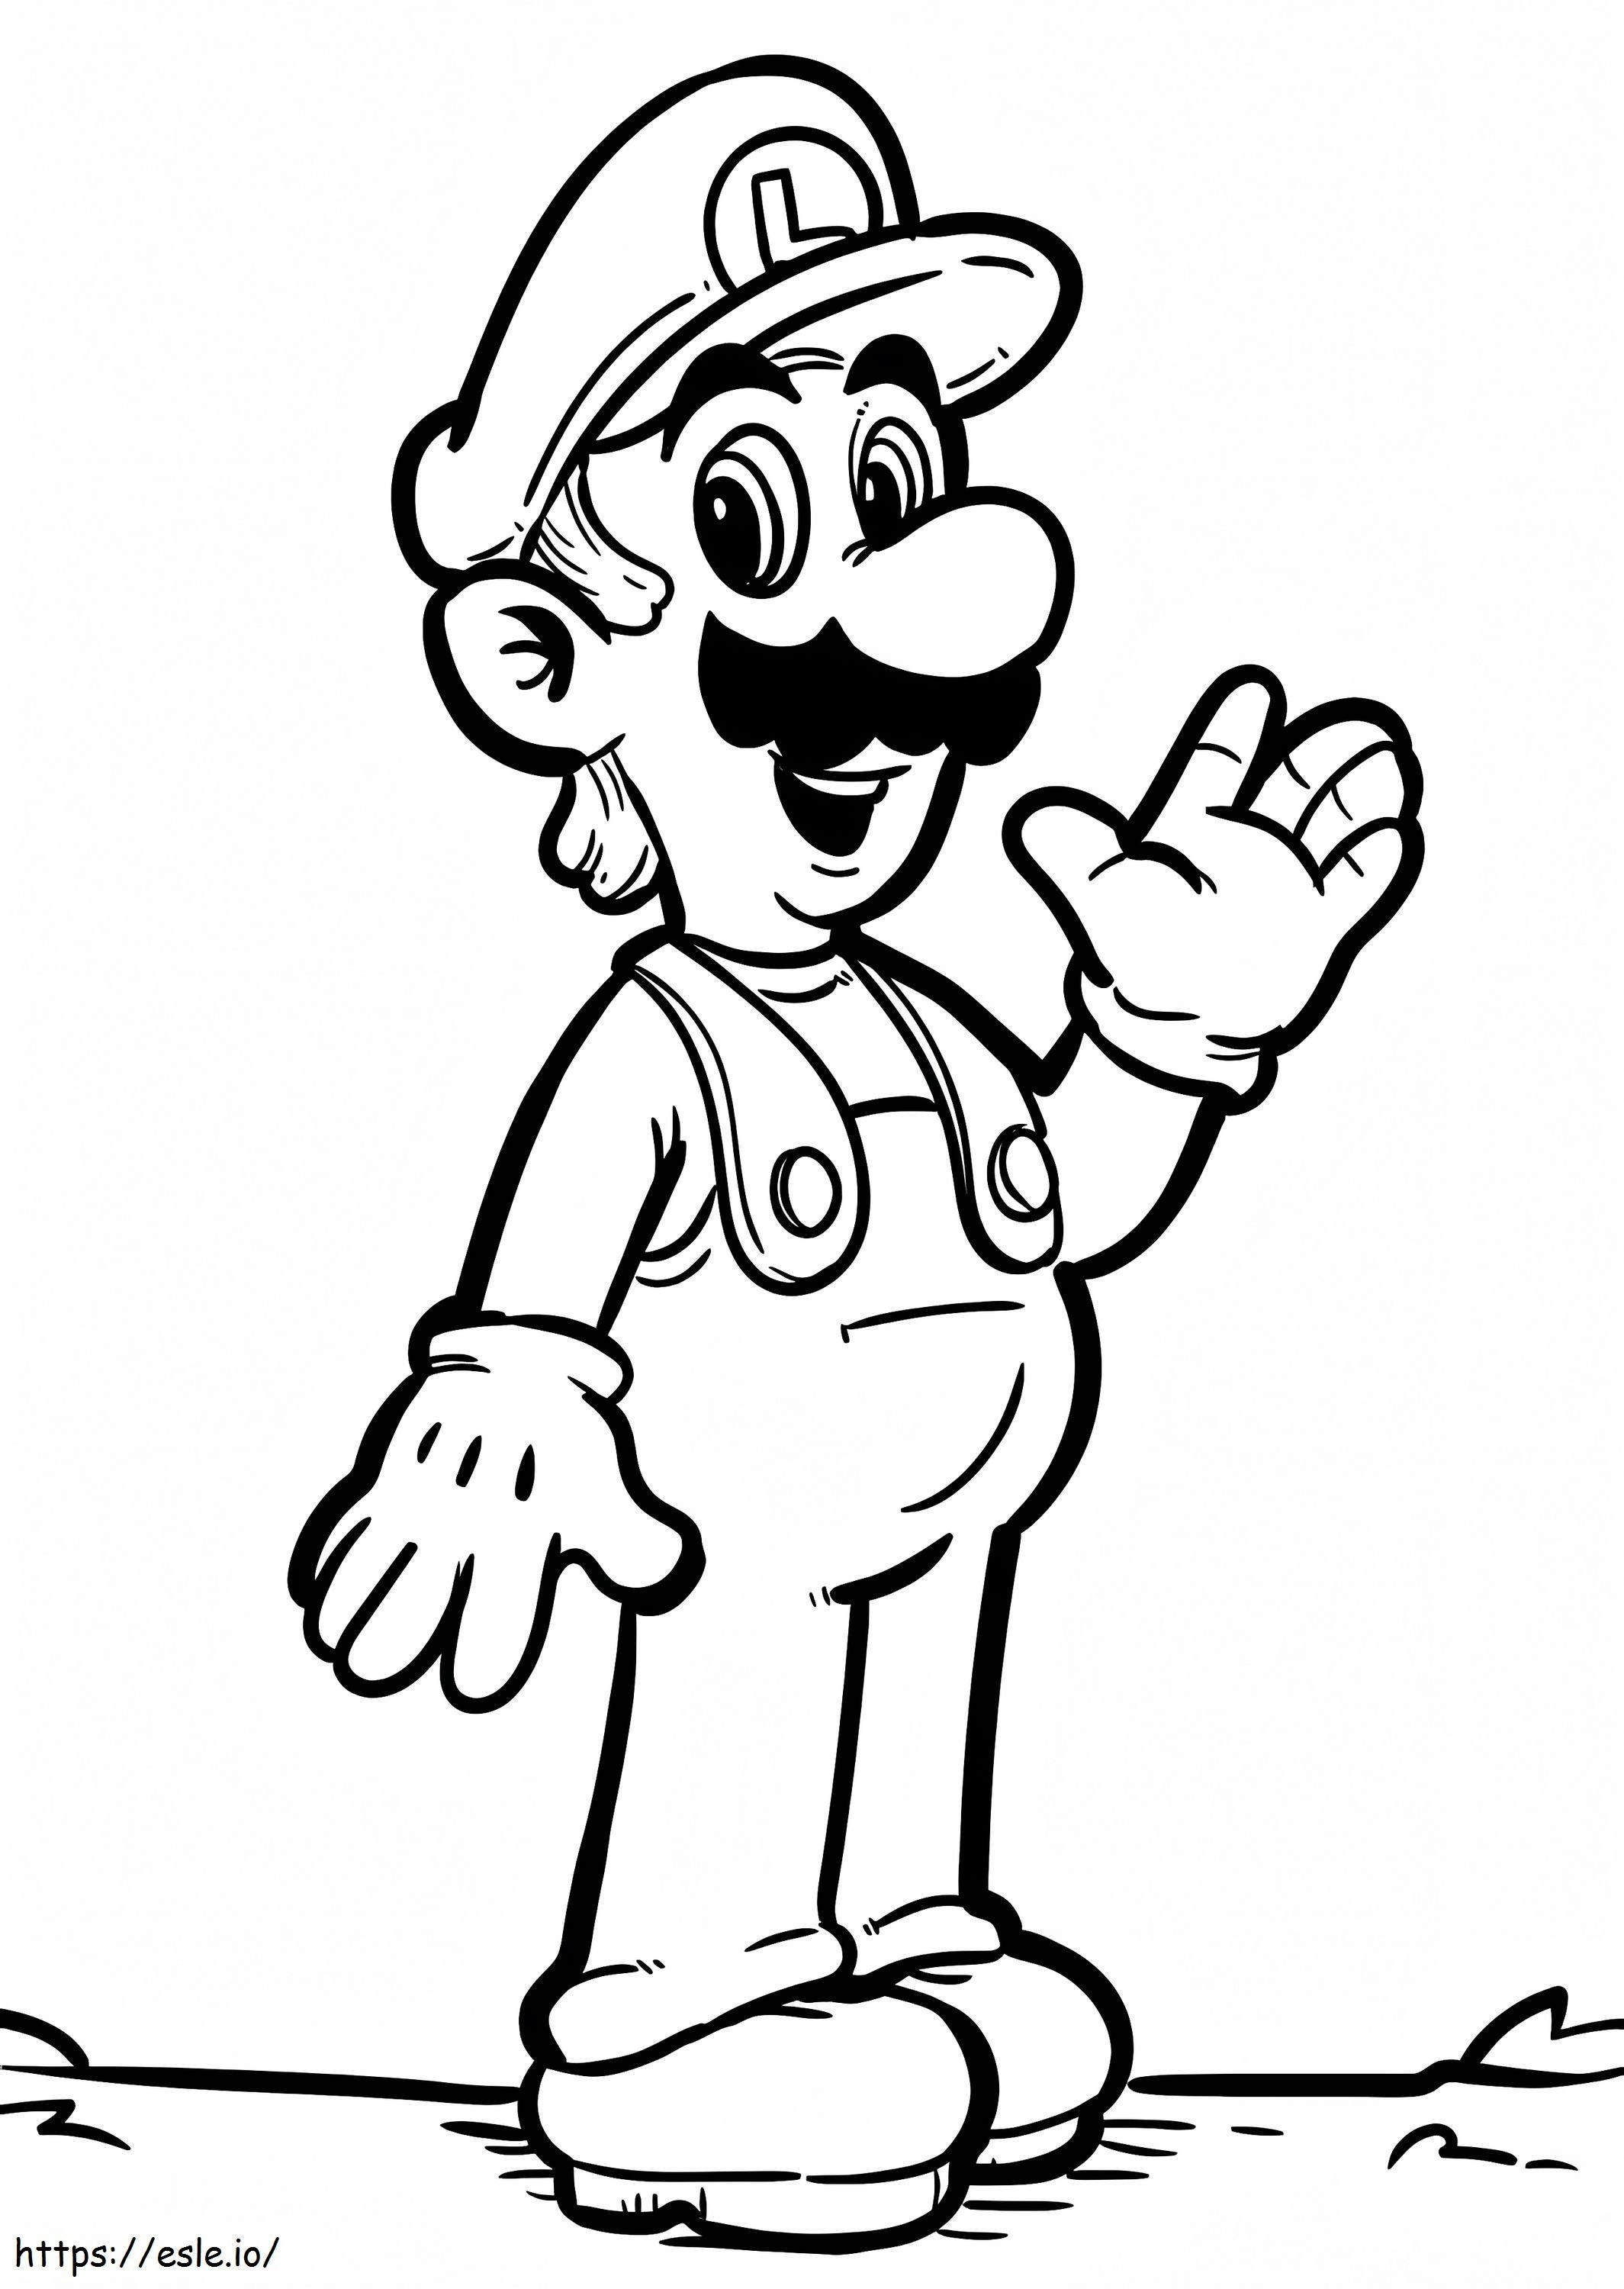 Luigi De Super Mario 2 ausmalbilder